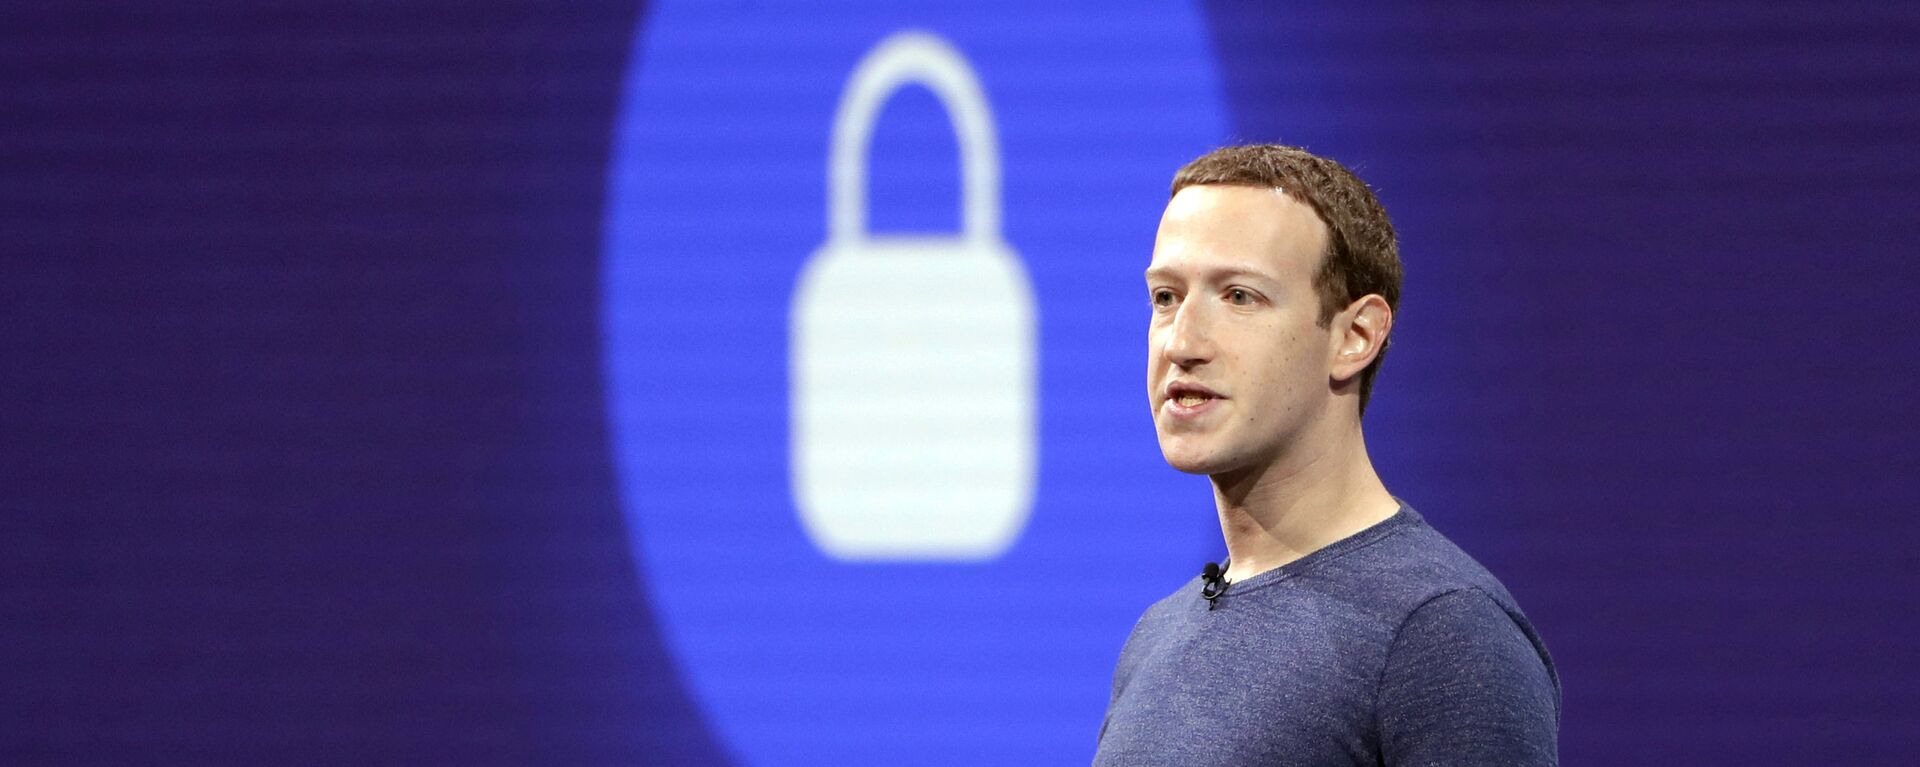 Mark Zuckerberg, fundador de Meta y Facebook (archivo) - Sputnik Mundo, 1920, 21.04.2022